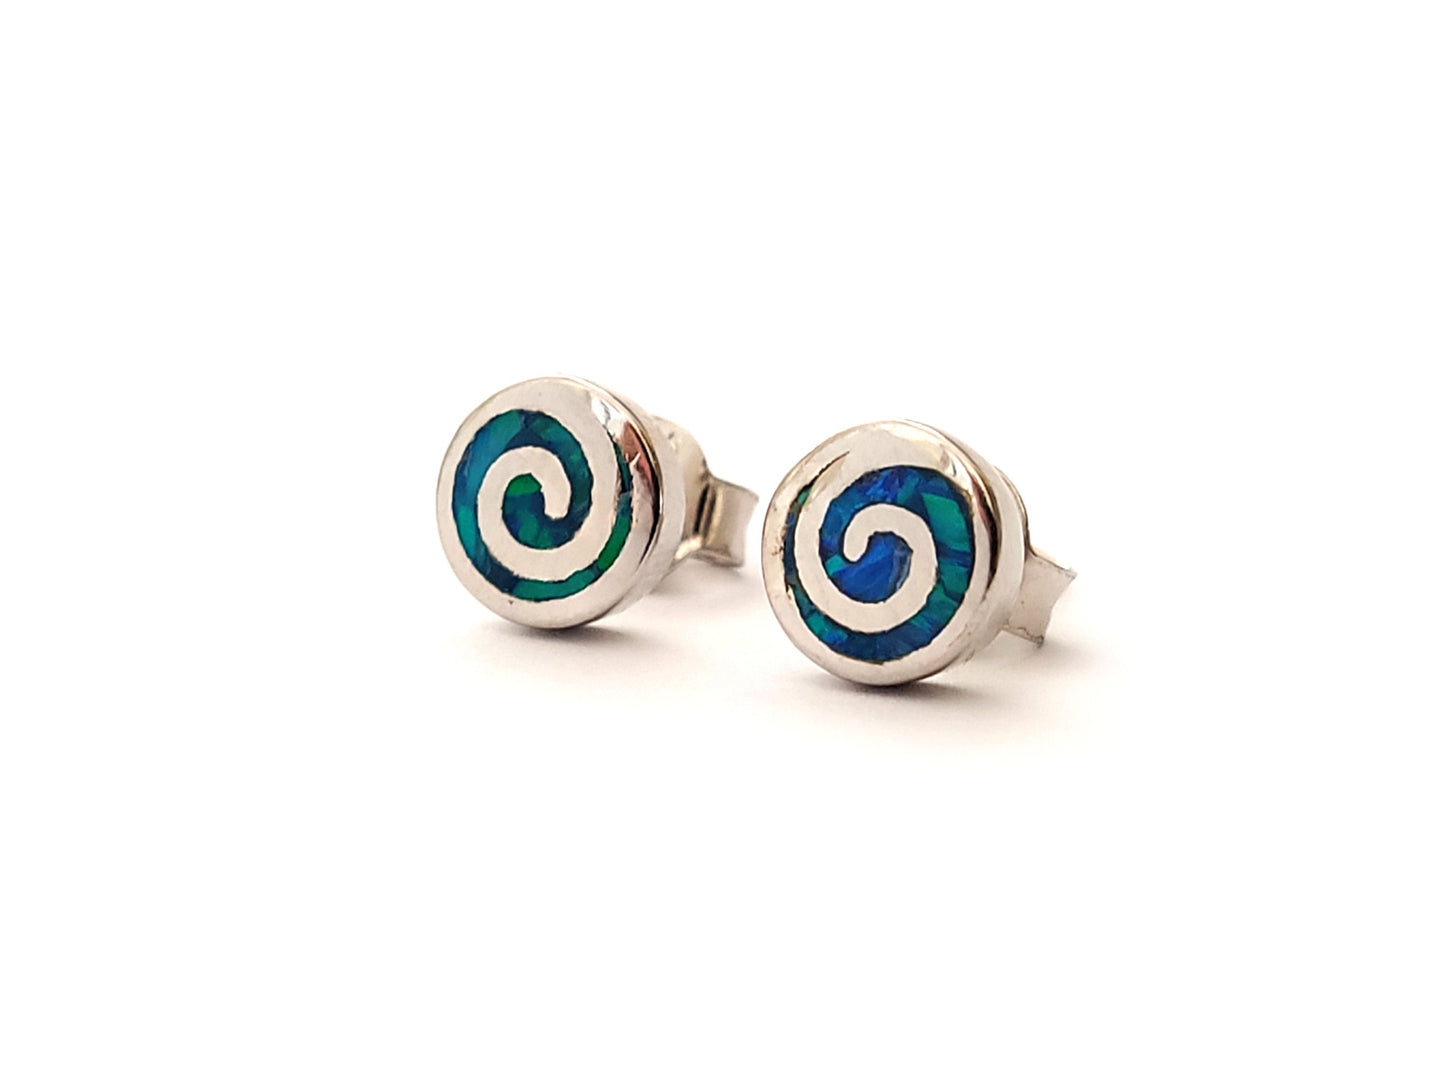 Greek Opal Earrings, Spiral Earrings, Small Earrings 7mm, Sterling Silver 925, Greek Spiral Opal Jewelry, Greek Jewelry, Round Earrings